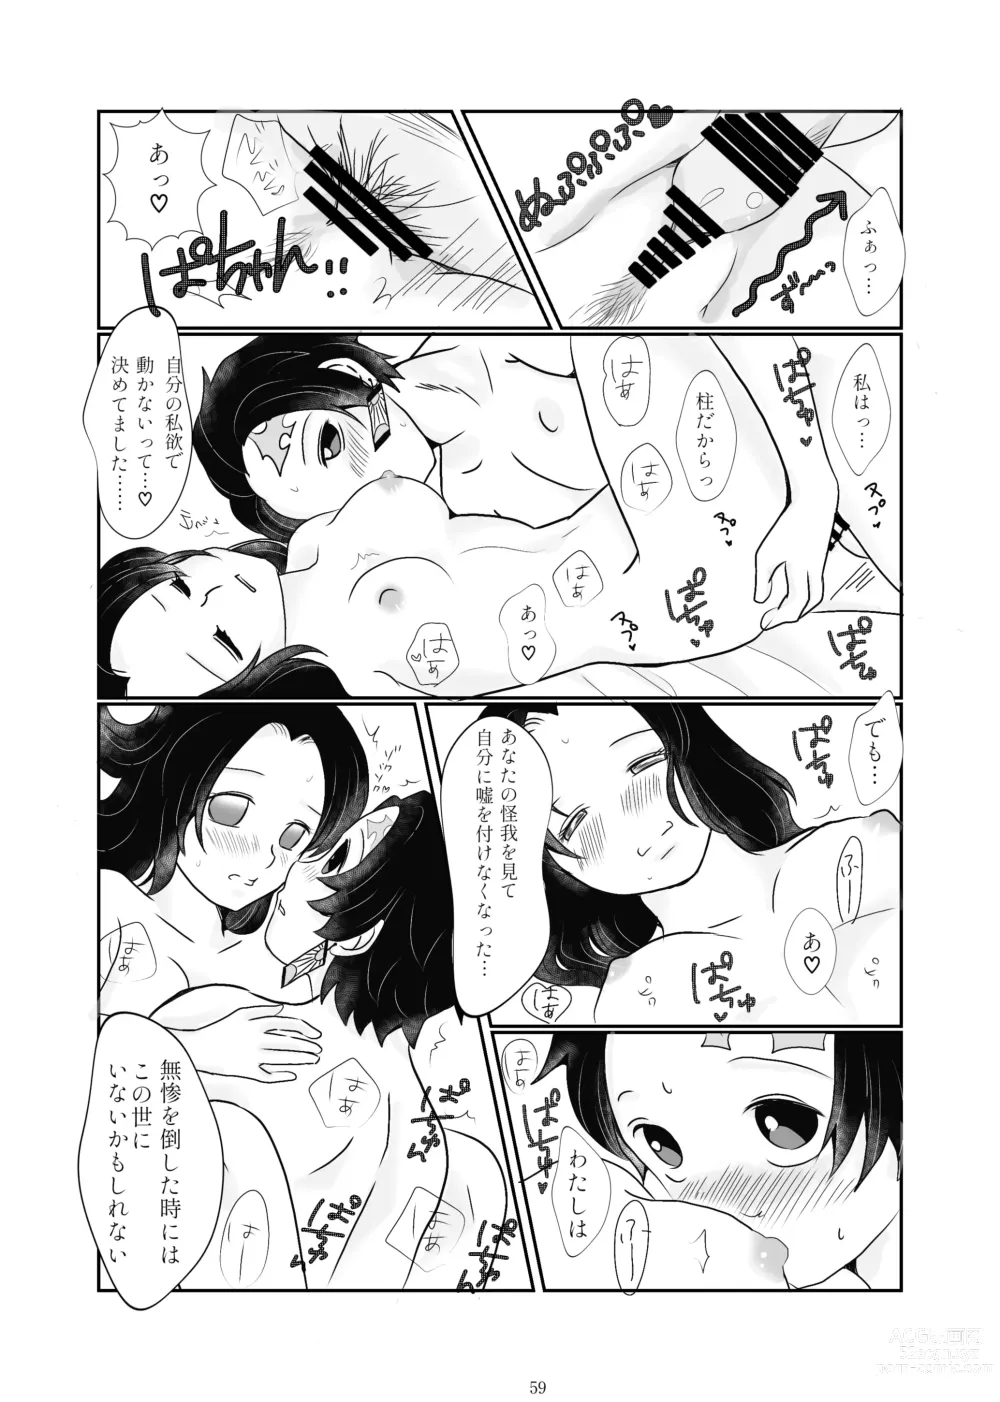 Page 55 of doujinshi Zutto, Anata to.